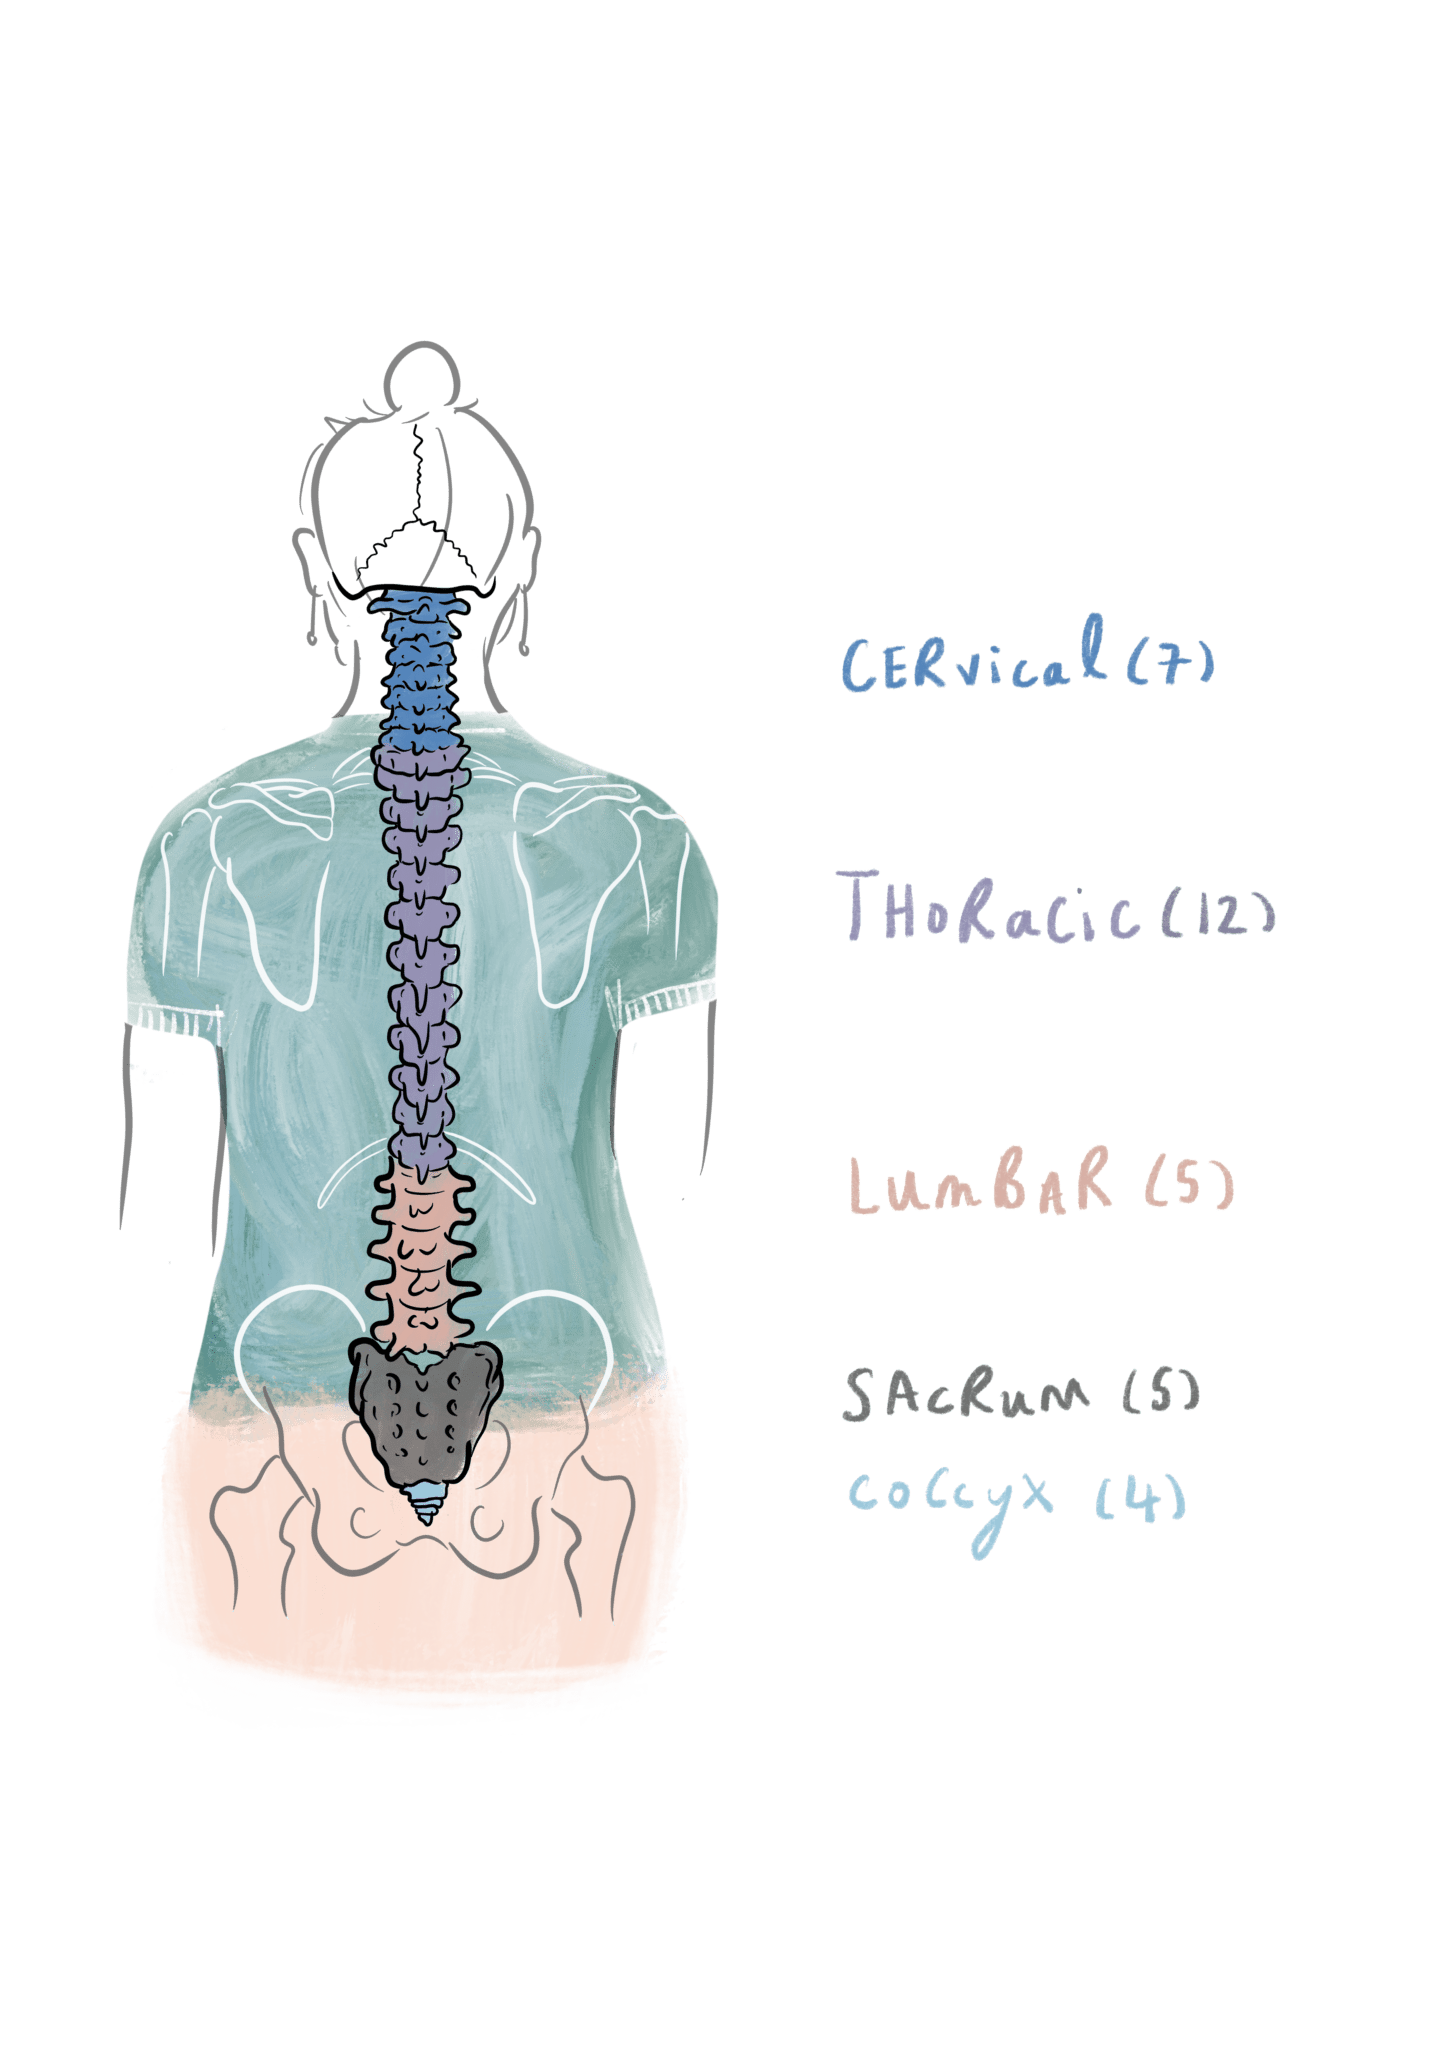 Spine anatomy qusttunes